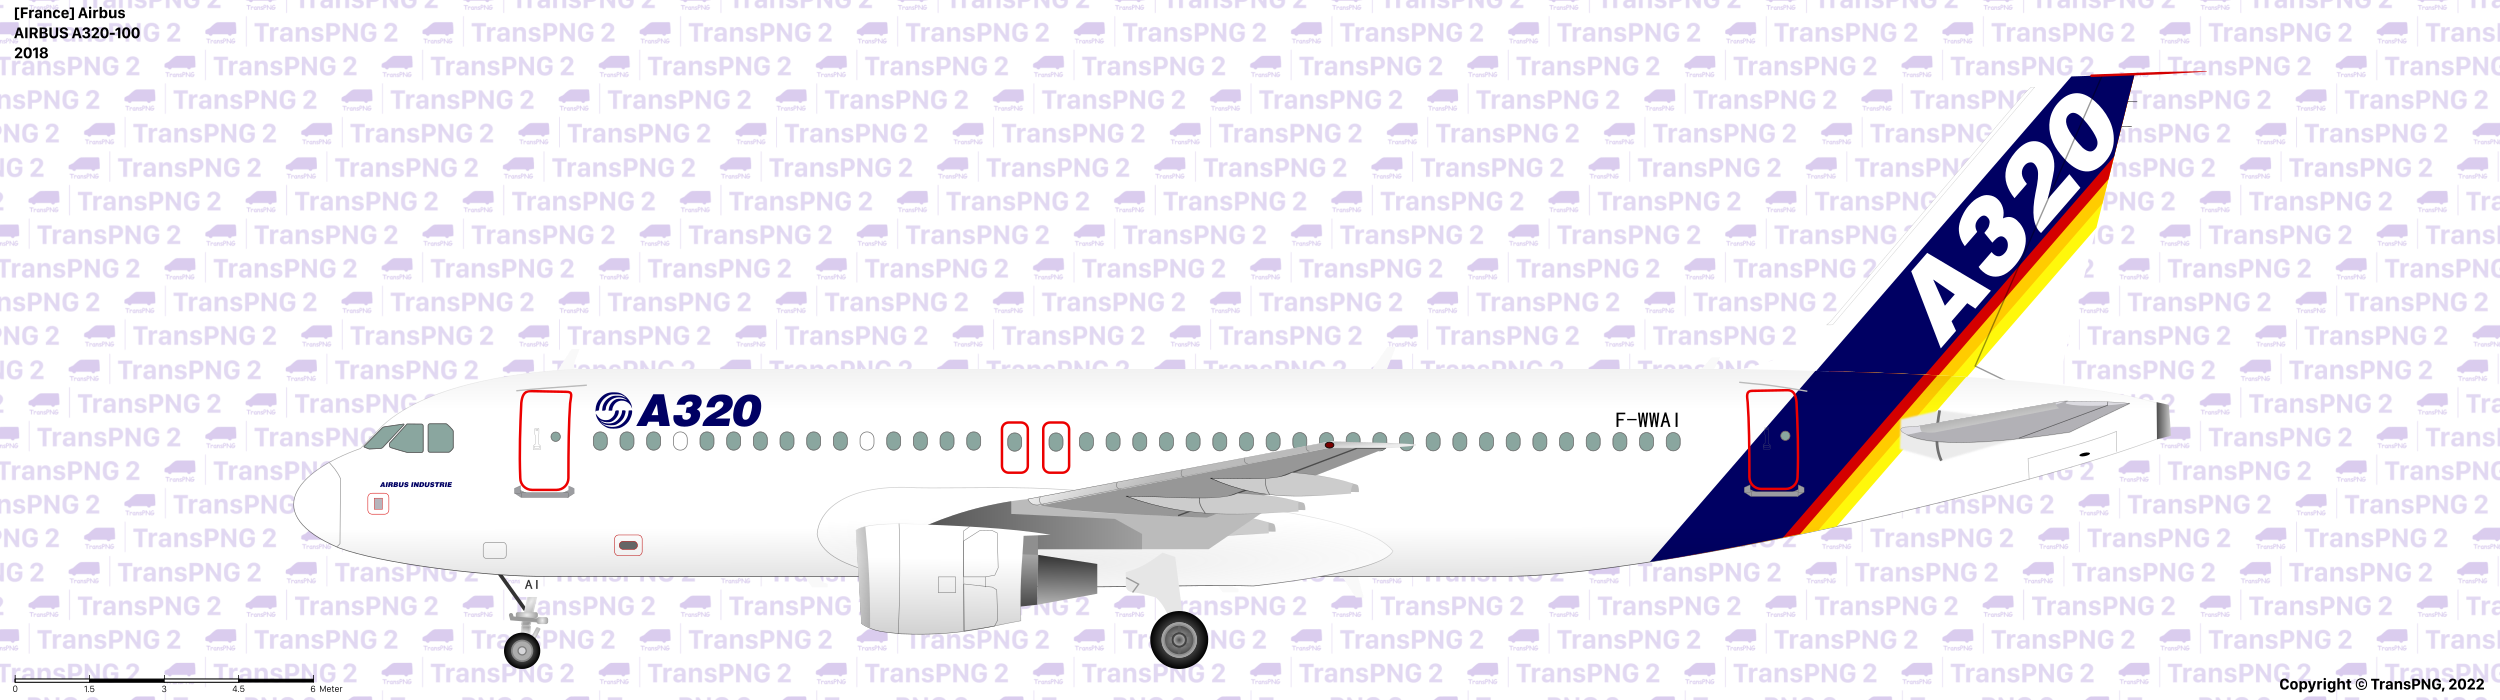 TransPNG.net | 分享世界各地多種交通工具的優秀繪圖 - 飛機 52235926452_7c6dbdffb7_o